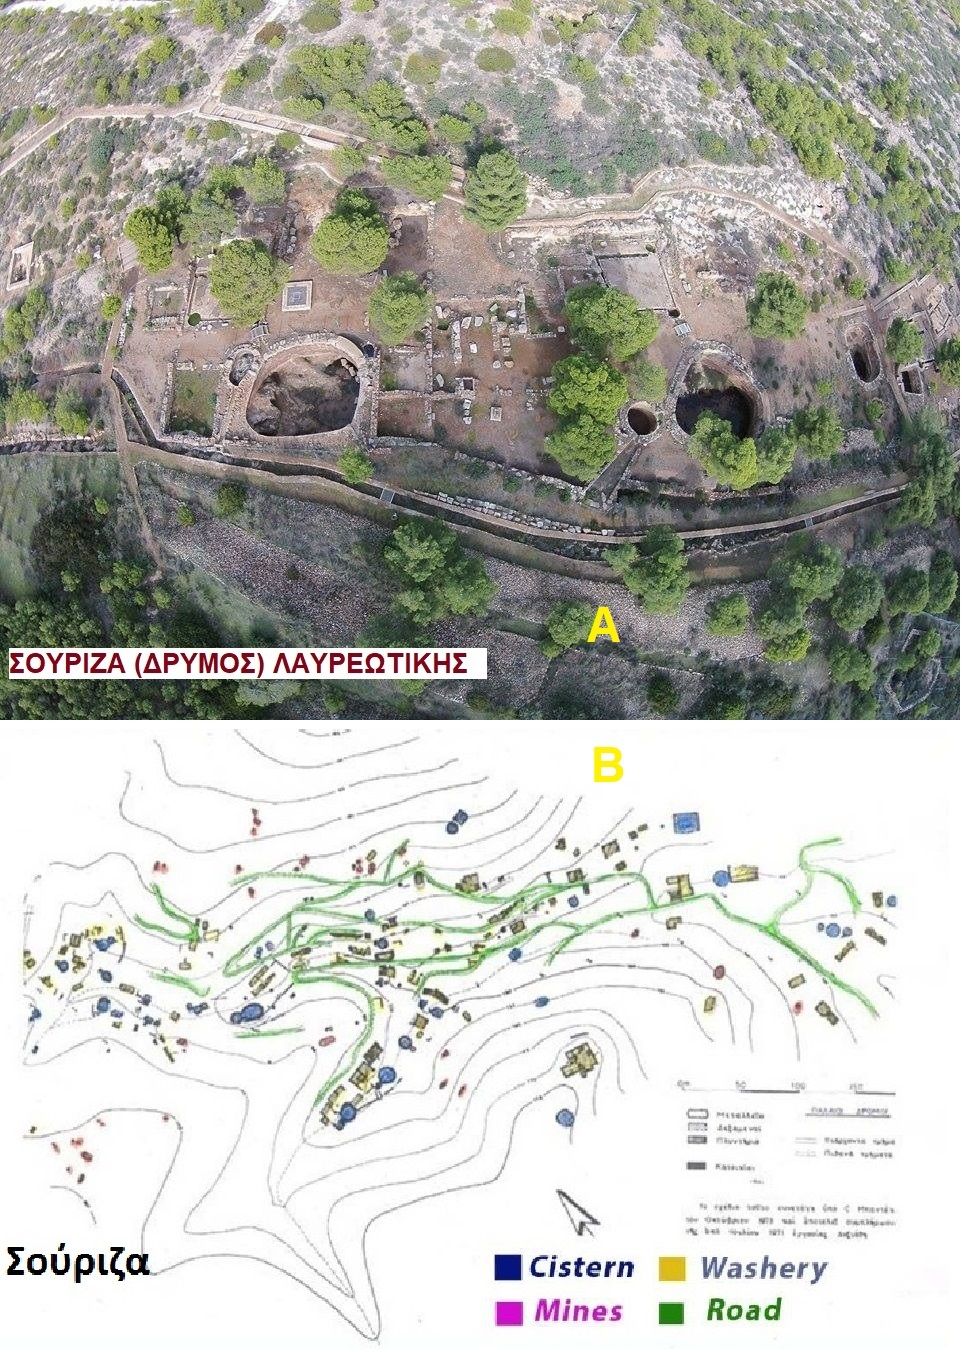 Εικ.1. A.Ο αρχαιολογικός χώρος κοιλάδας Σούριζας (Δρυμού) η λεγόμενη “ανασκαφή Ε. Κακαβογιάννη”. Β. Αποτύπωση των εγκαταστάσεων εμπλουτισμού μεταλλευμάτων και μεταλλείων της κοιλάδας της Σούριζας.